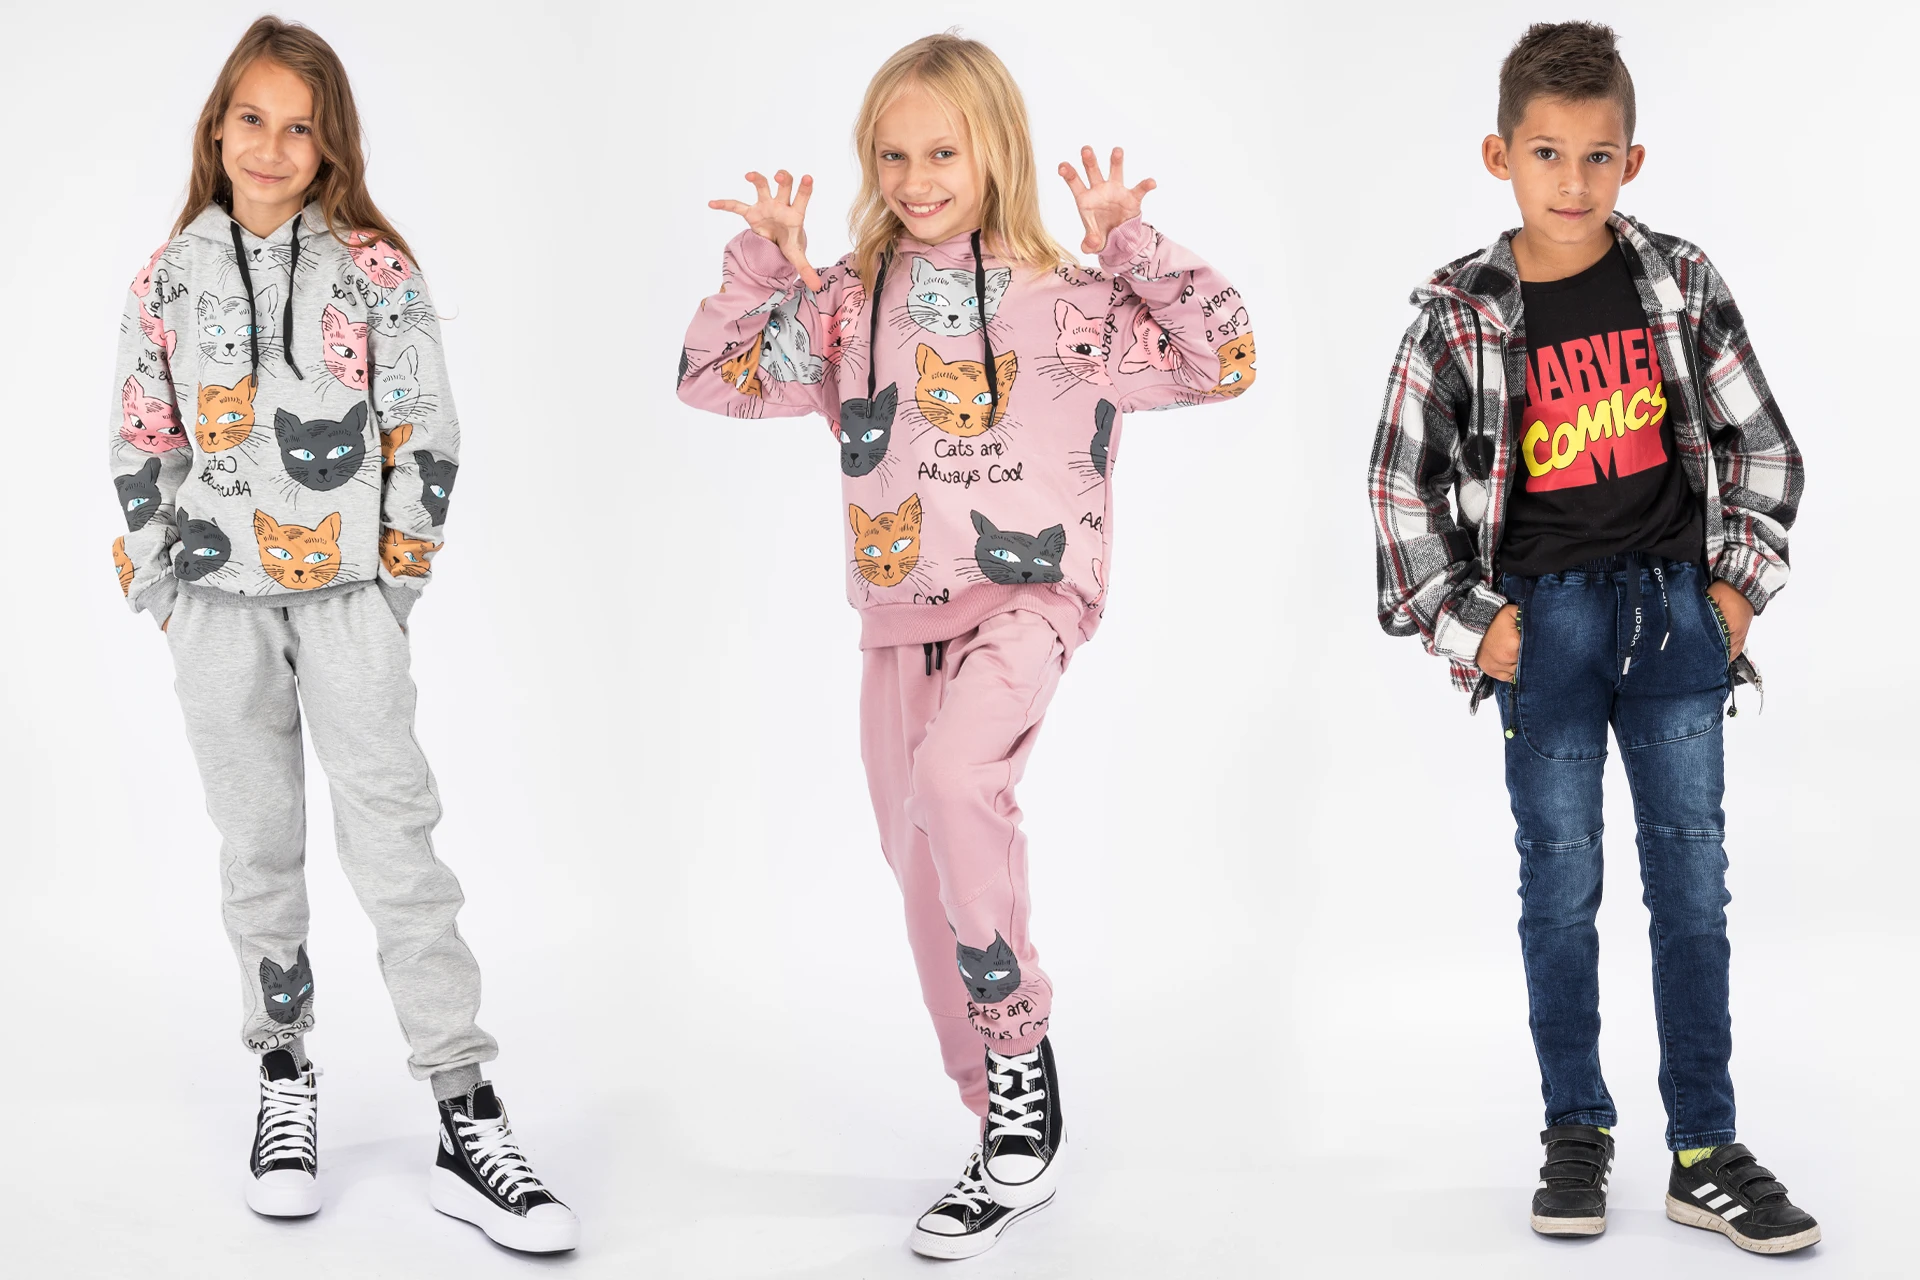 Modele dziecięce – zdjęcia ubrań na dzieciach